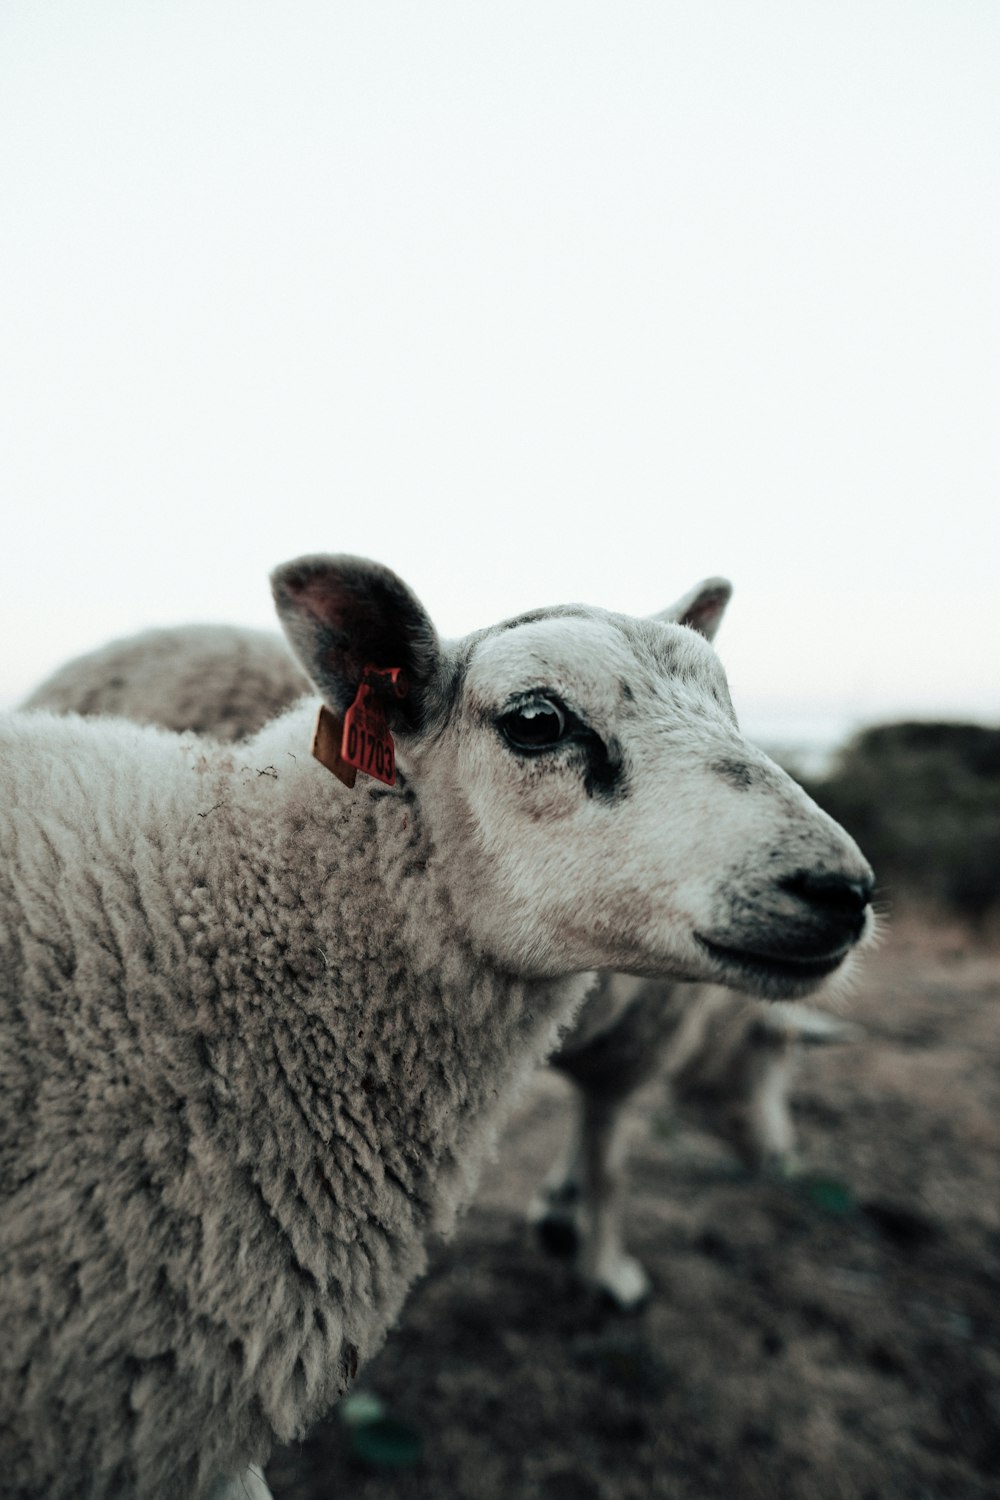 closeup photo of white sheep